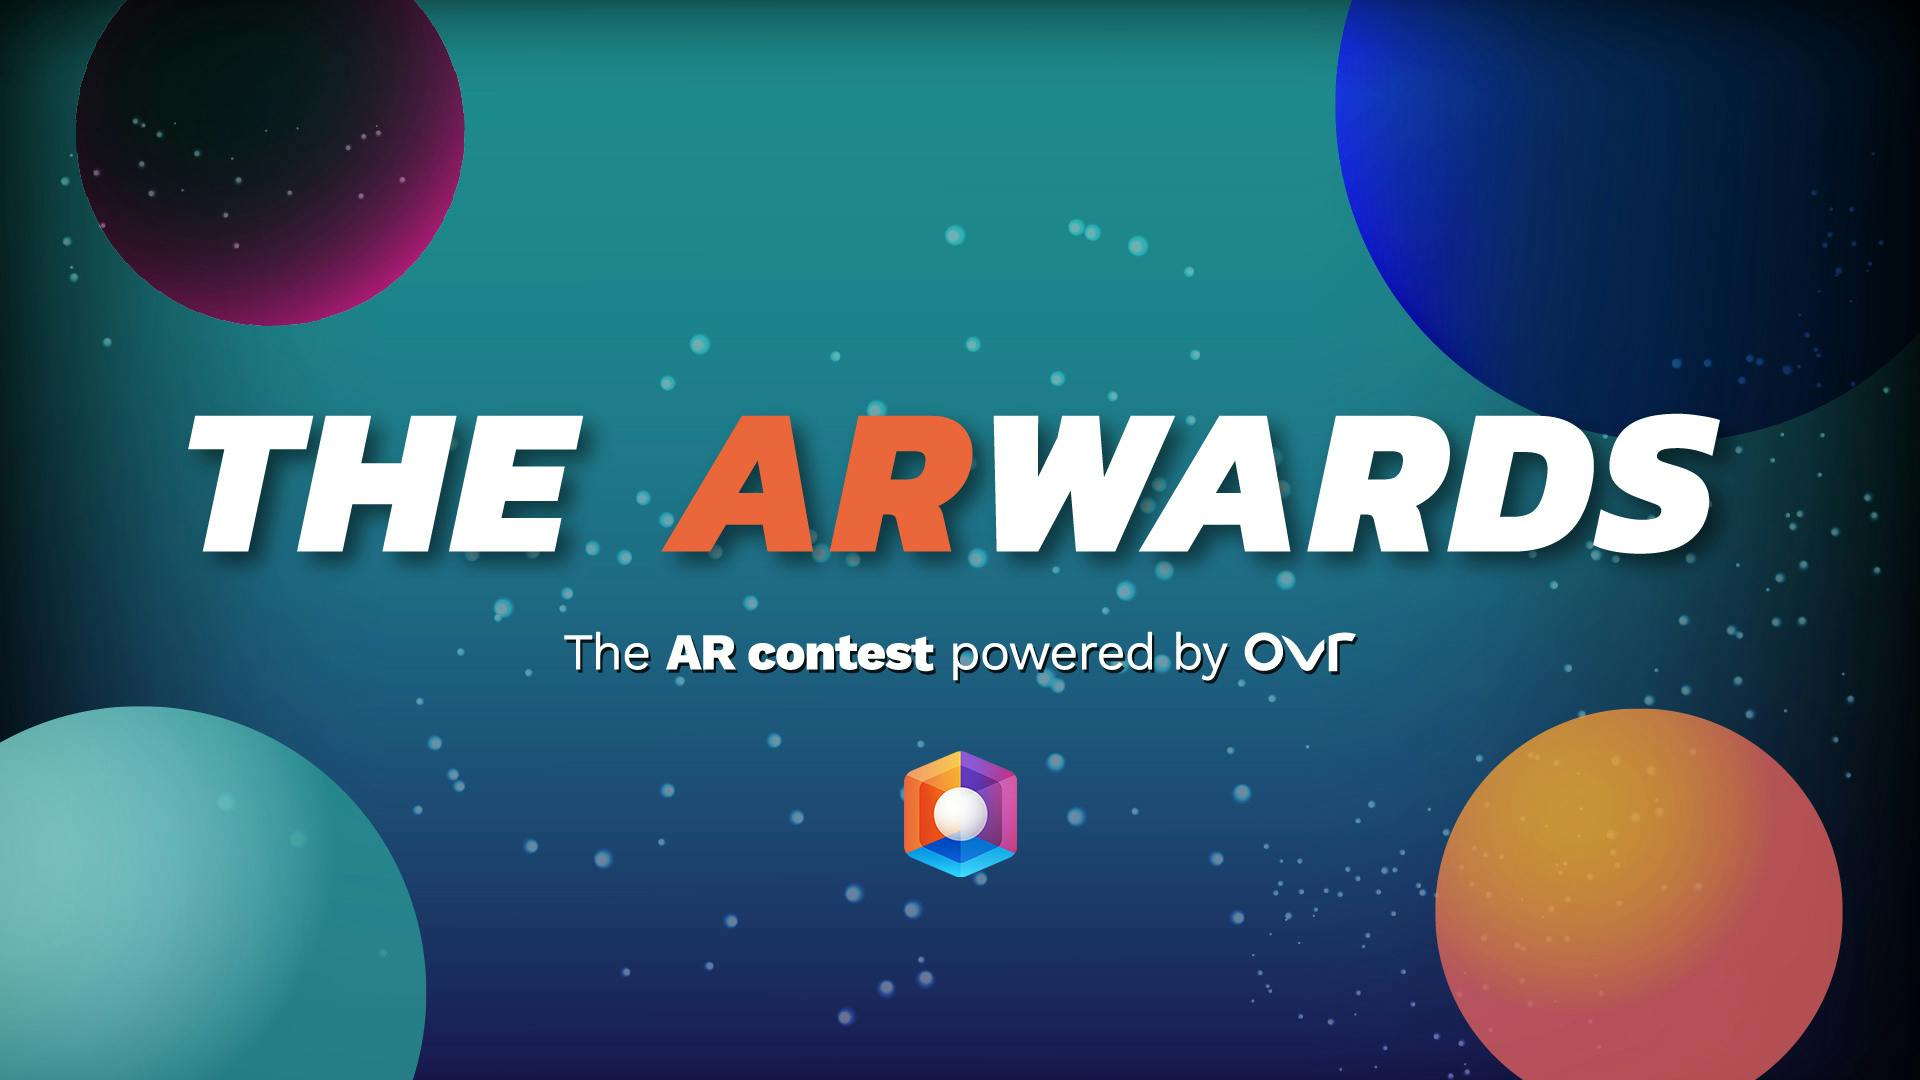 Les ARwards d’OVER: créer du contenu en réalité augmentée et gagner de l’argent.